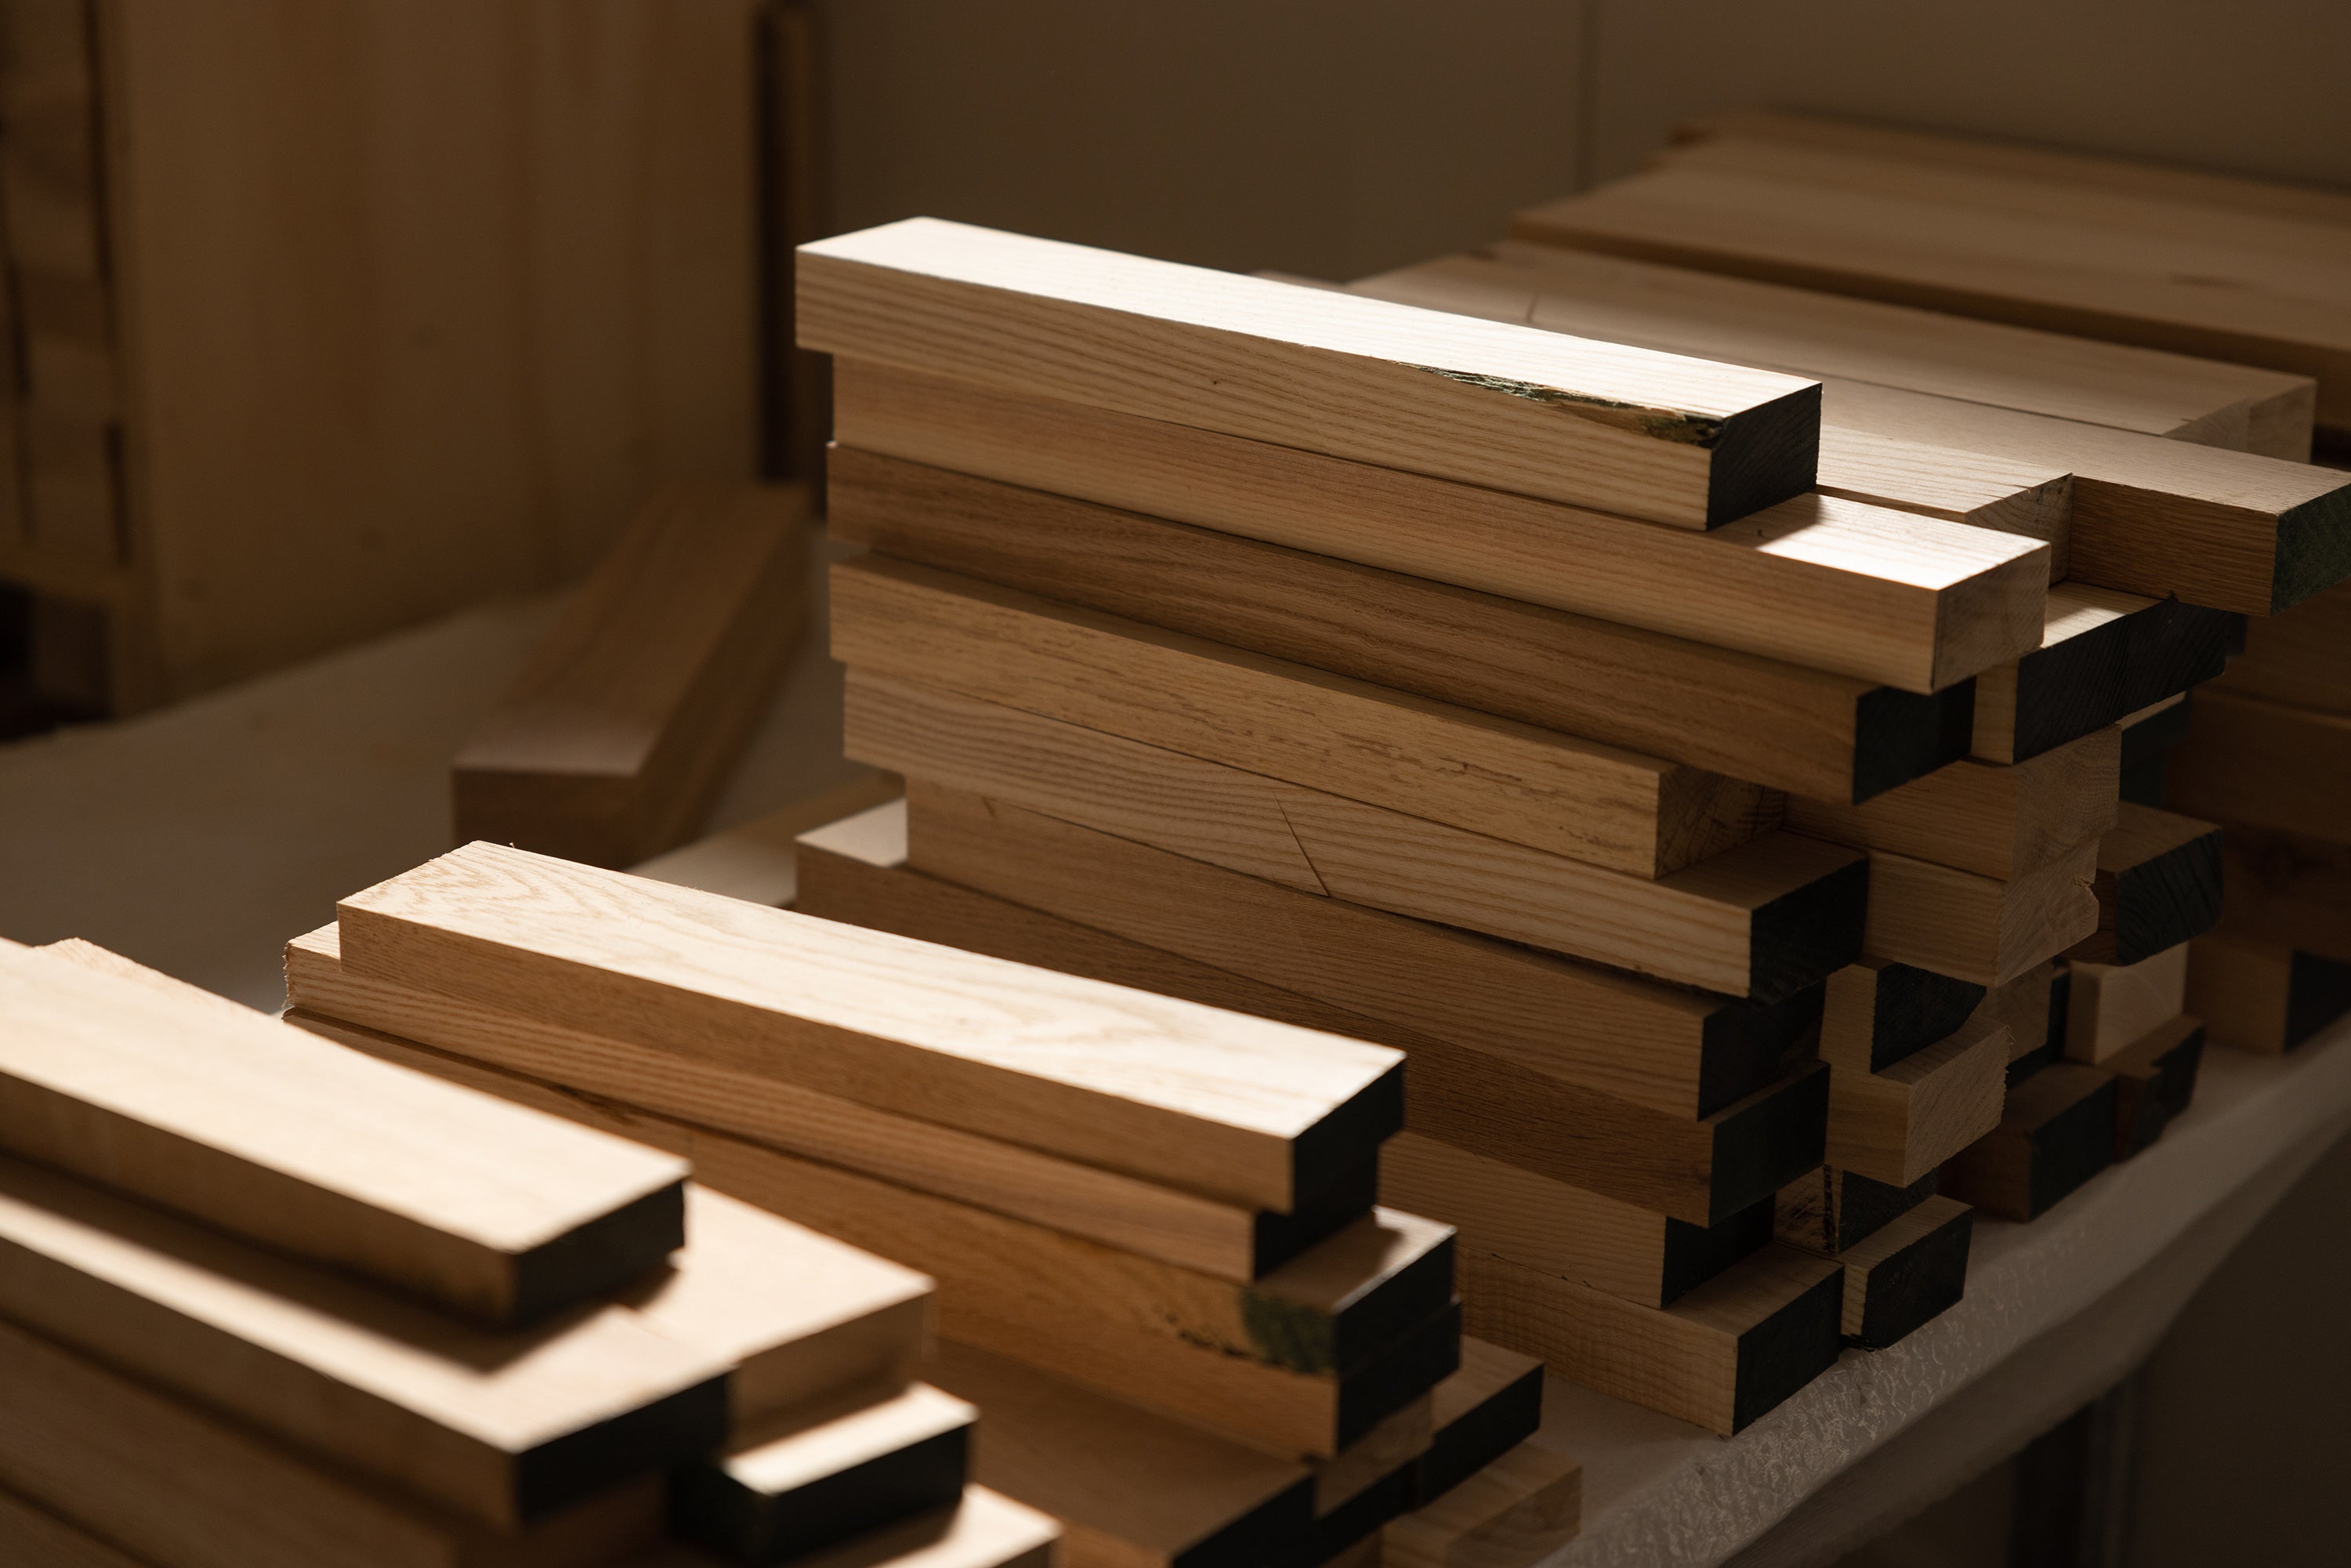 Materials – Timber